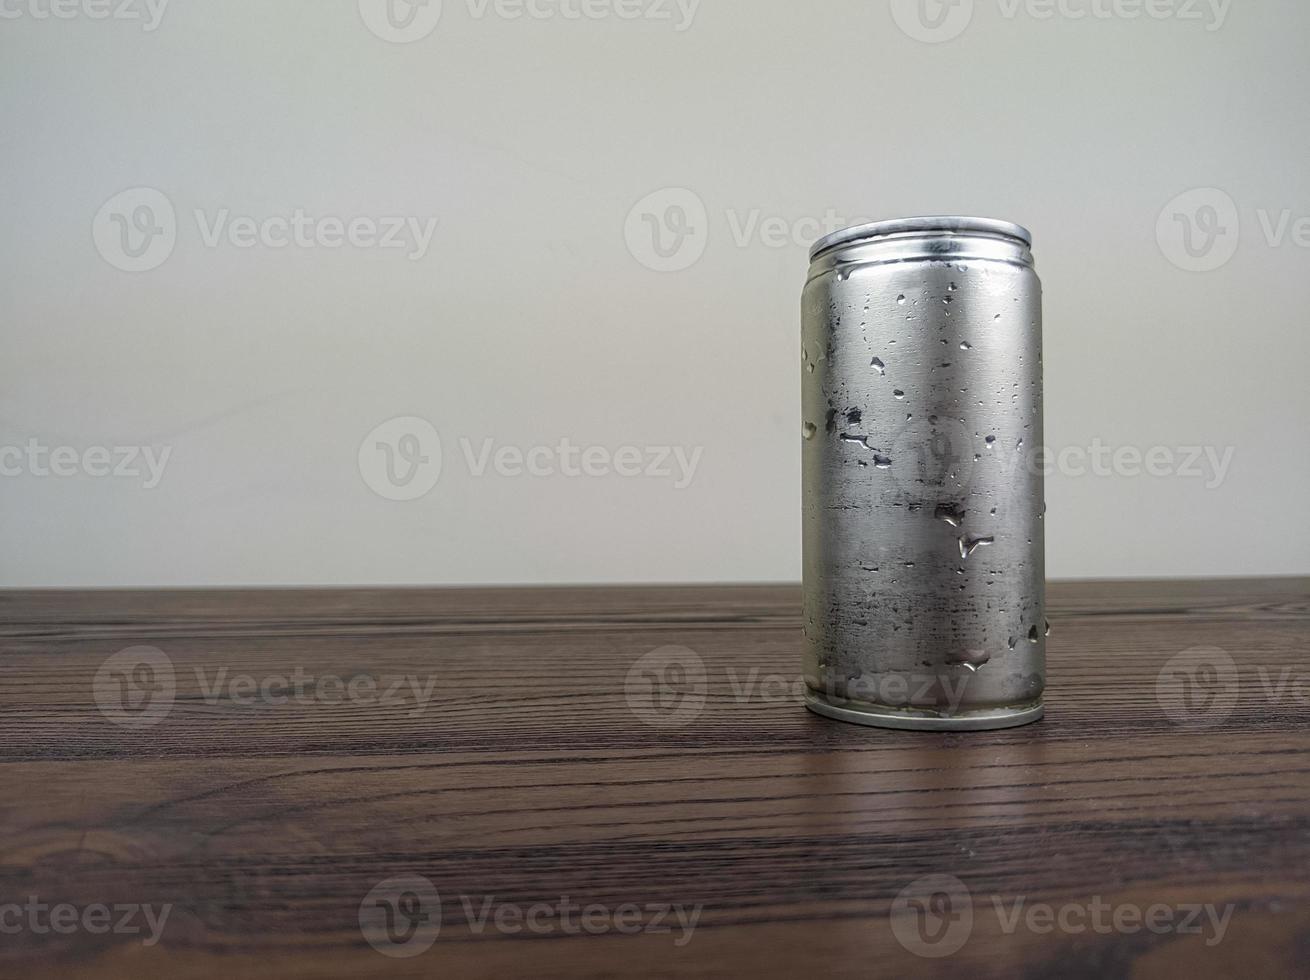 Dosen mit kalten Energy-Drinks auf einem Holztisch hautnah foto